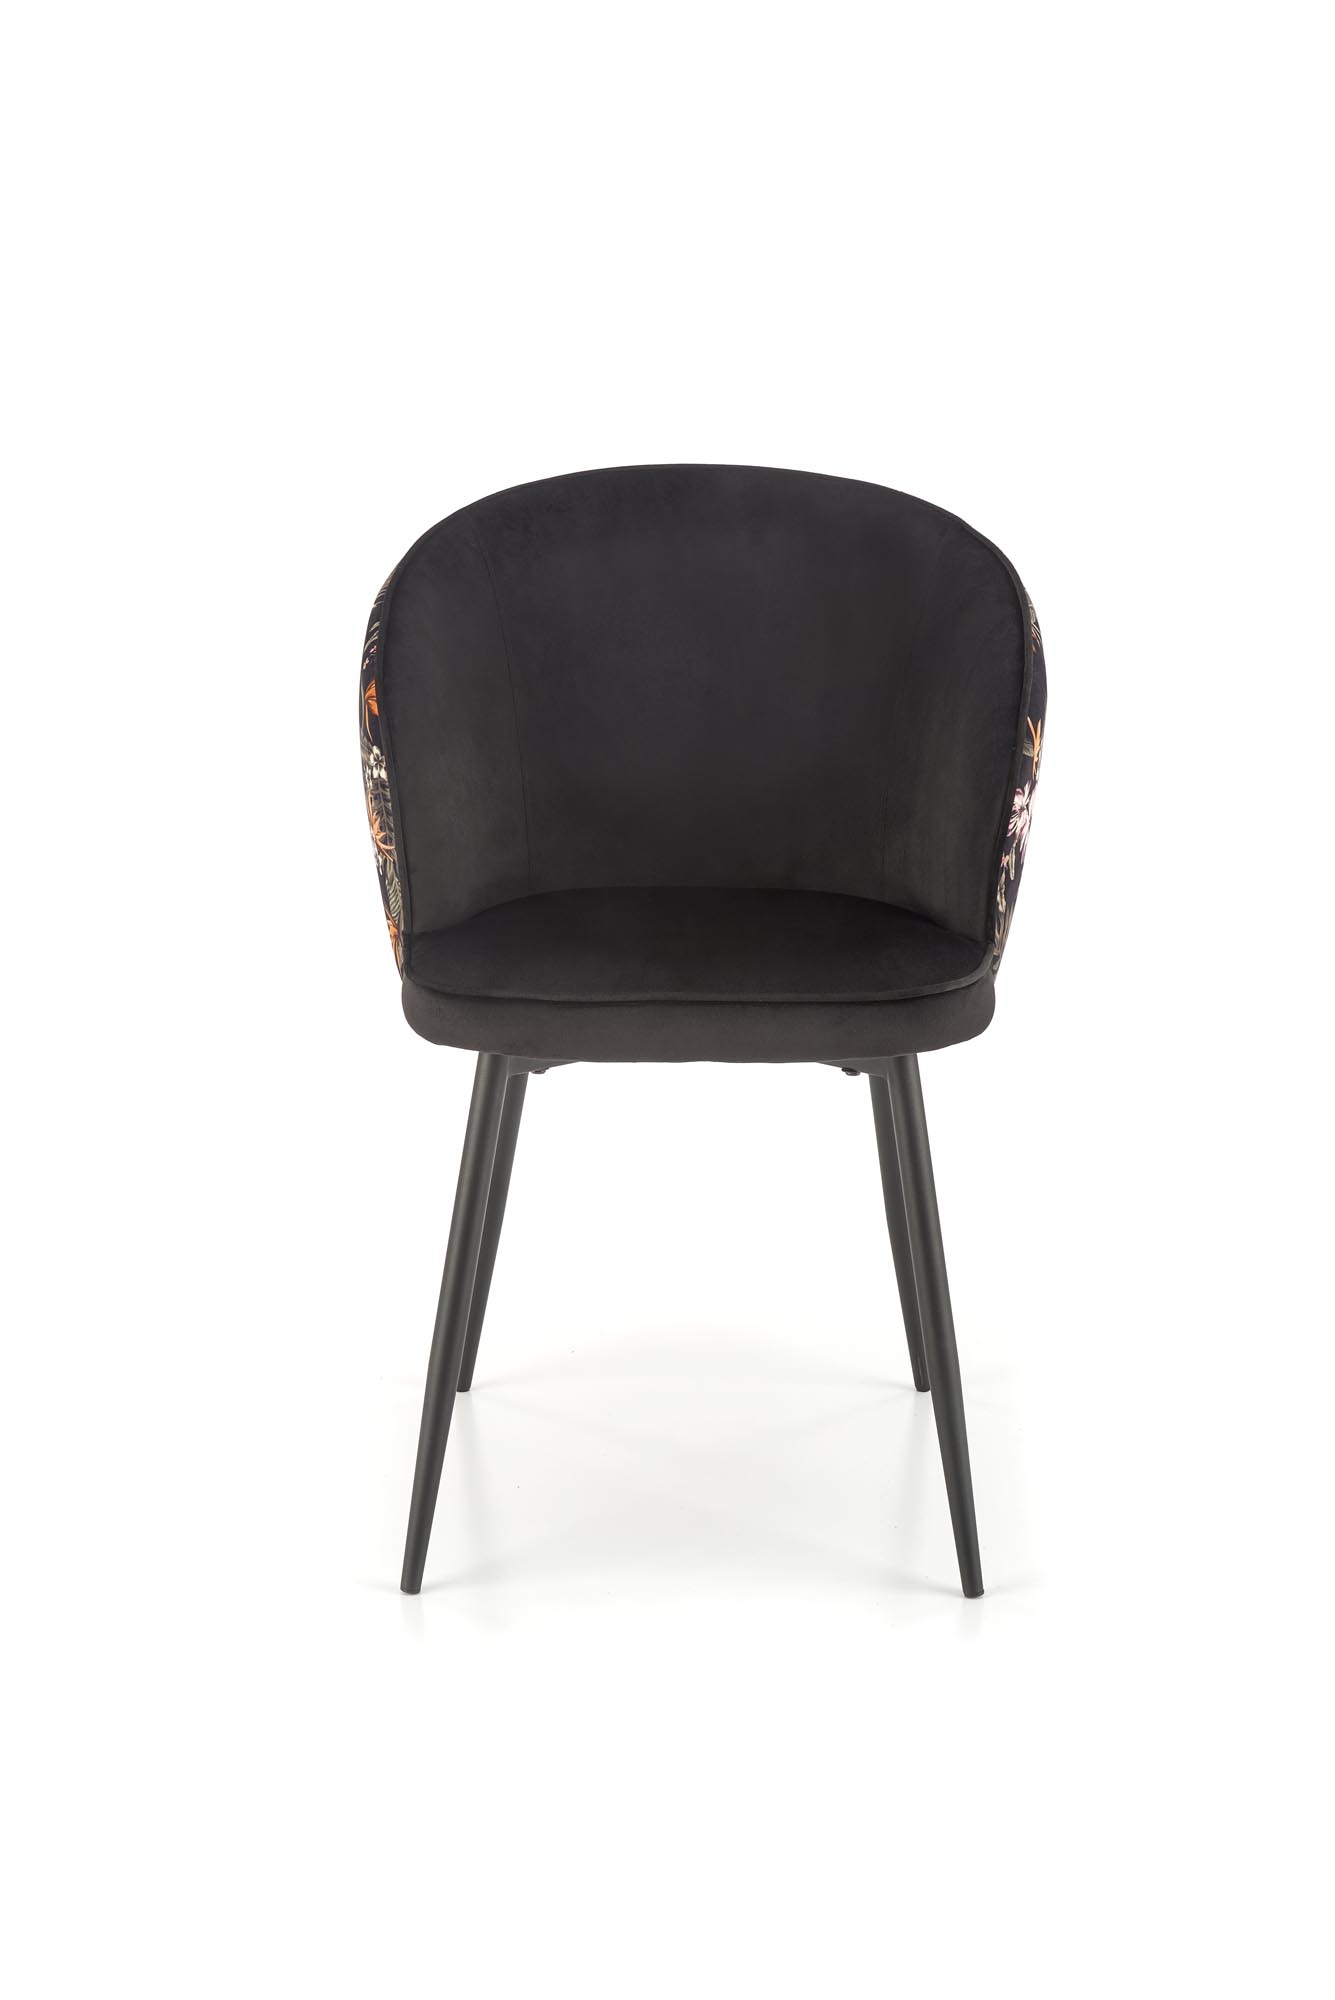 K506 Židle mnohobarevný Židle čalouněné k506 - Fekete